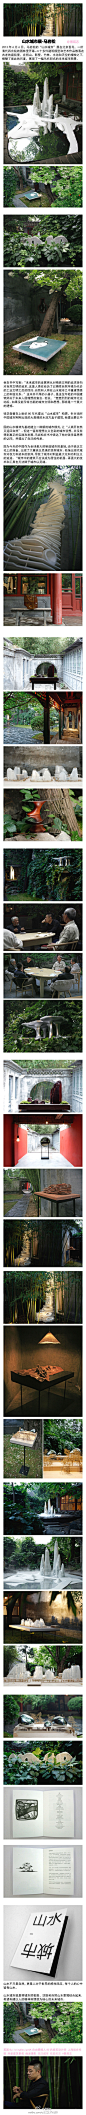 上周马岩松的“山水城市”展在北京吾号，一所清代园林四合院里开展。二十多件建筑模型和艺术作品散落在古老的庭院里，在假山、影壁、竹林、水池和天空的掩映下，模糊了彼此的尺度，展现了一幅乌托邦式的未来城市图景。